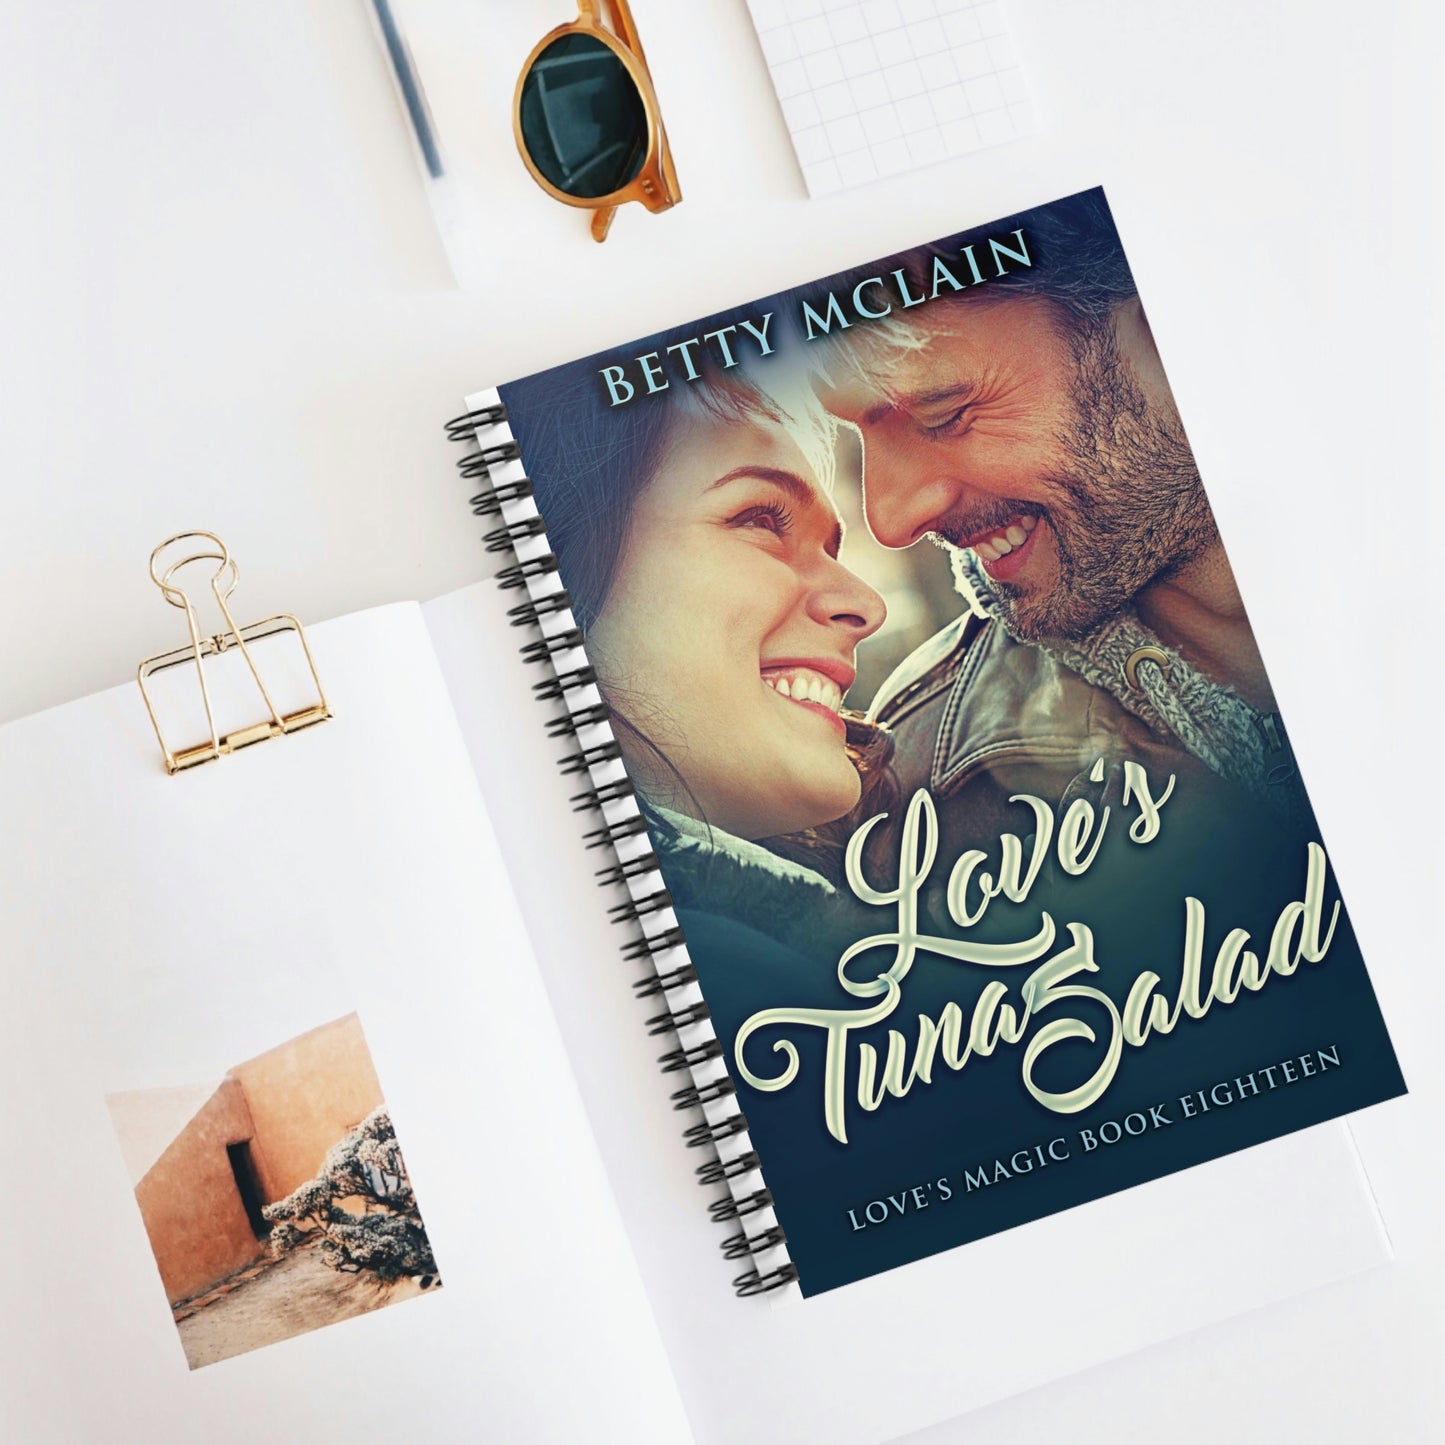 Love's Tuna Salad - Spiral Notebook